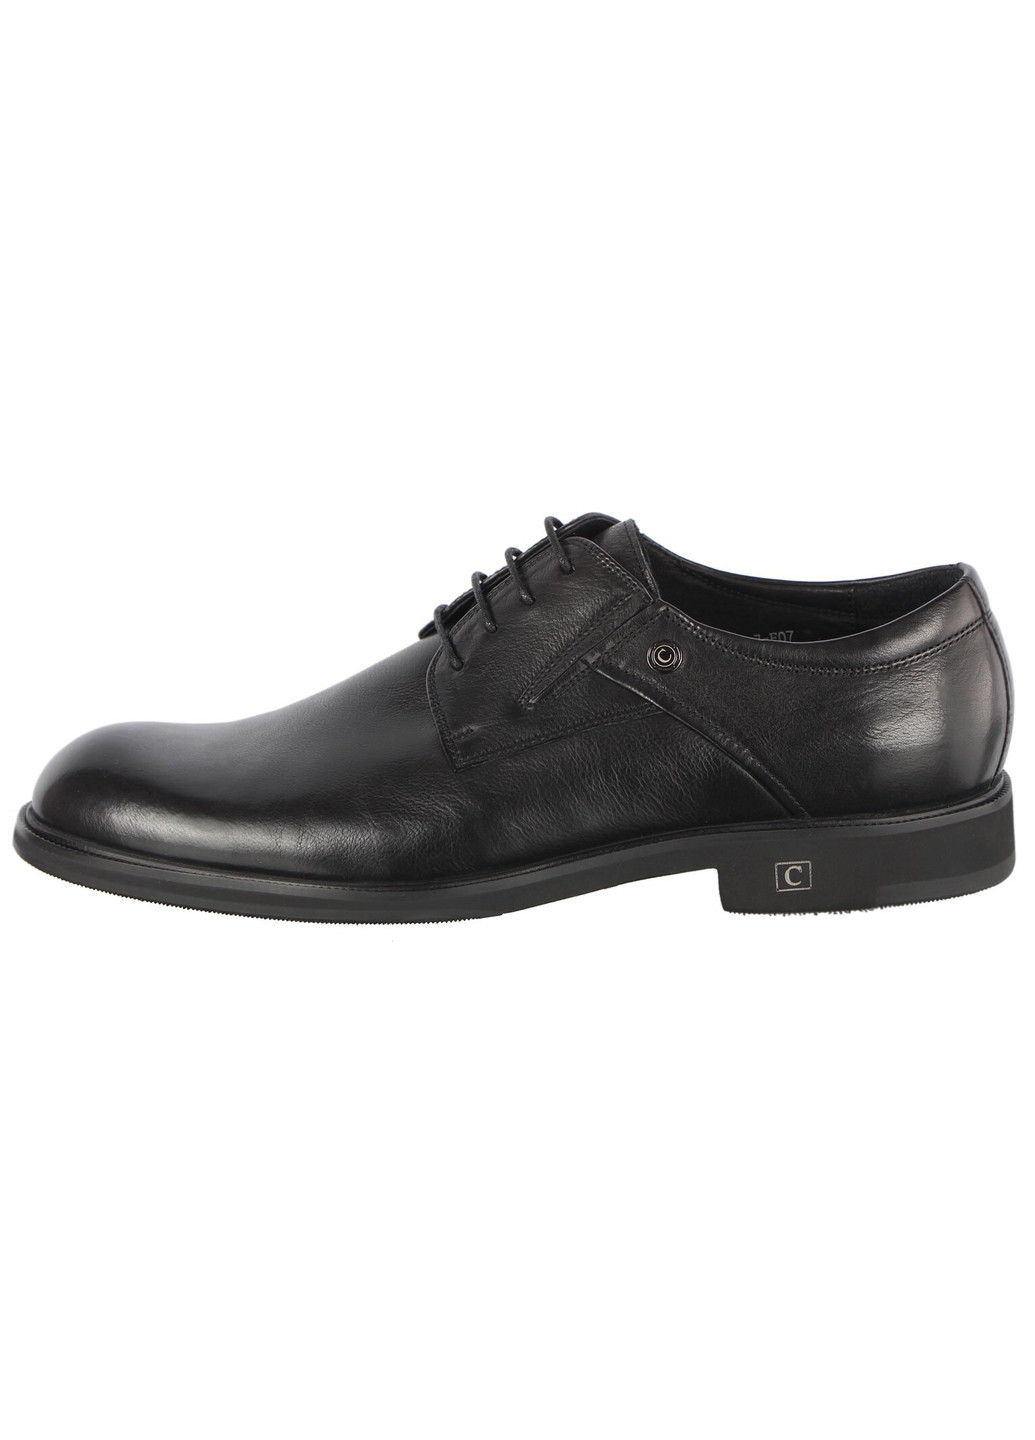 Черные мужские классические туфли 196339 Cosottinni на шнурках